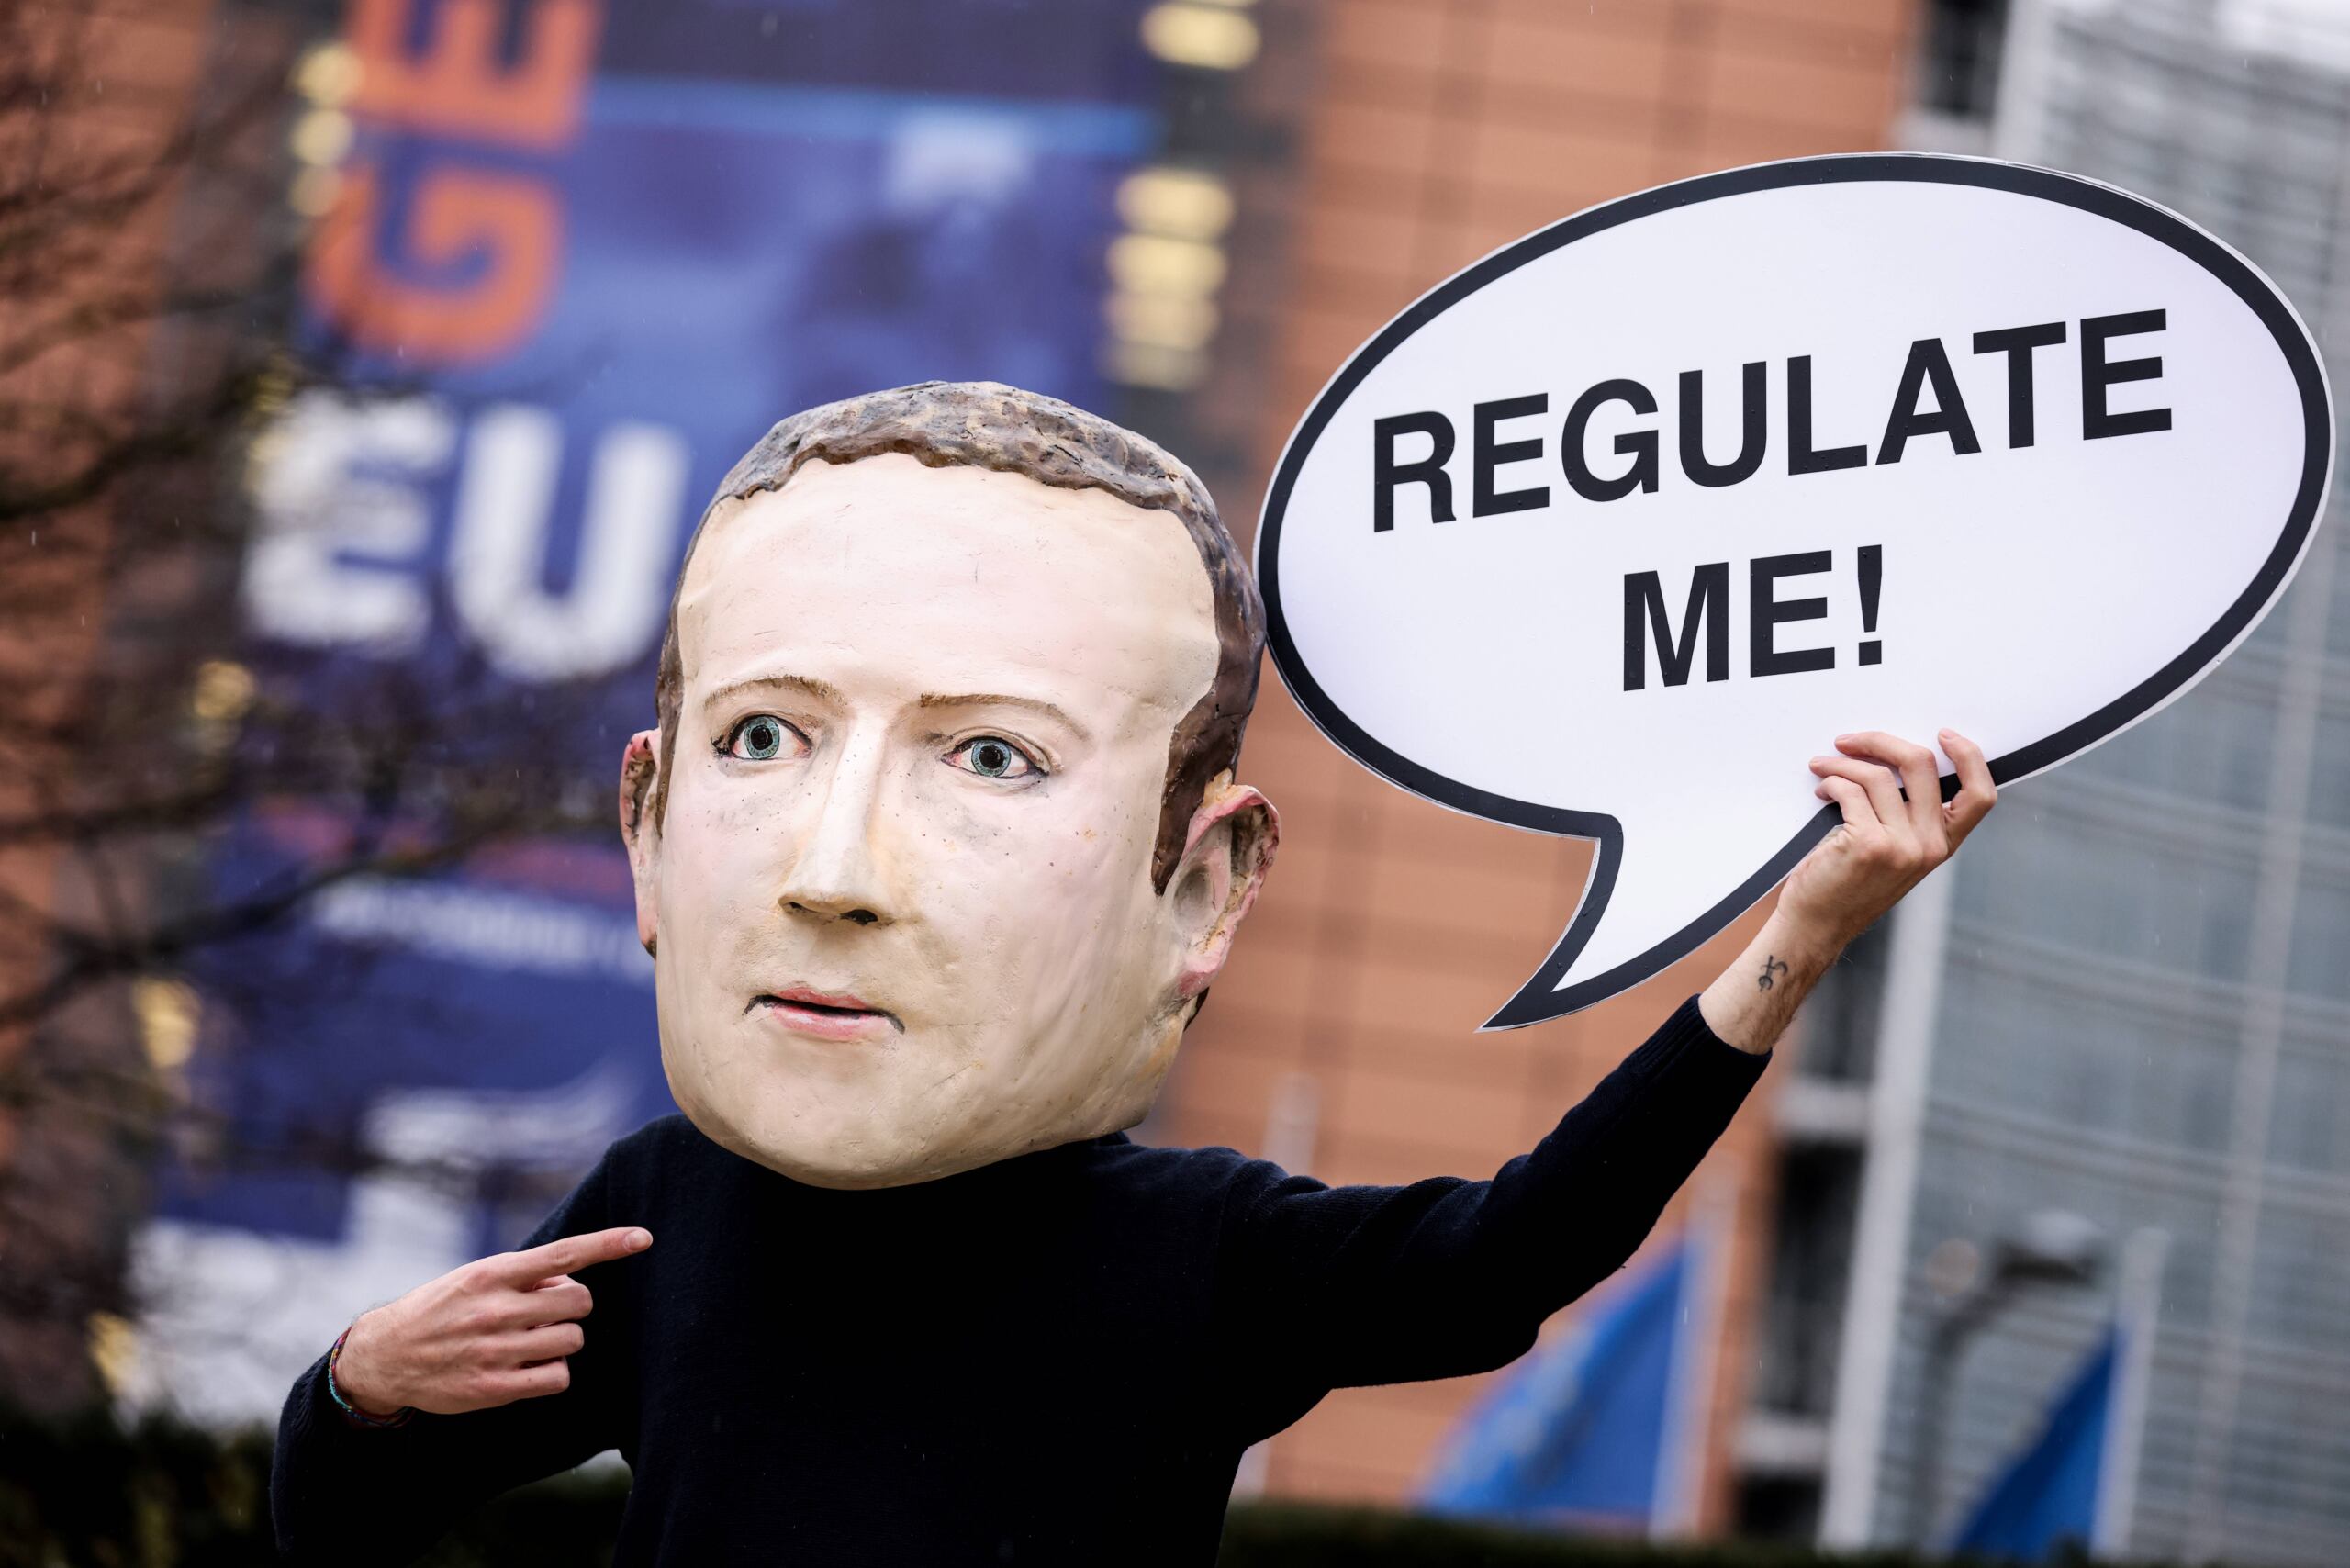 Aktywista ekologicznej organizacji pozarządowej Avaaz w masce przedstawiającej prezesa Facebooka Marka Zuckerberga trzyma transparent z napisem "Regulate me" podczas akcji upamiętniającej wydanie ustawy o usługach cyfrowych, przed budynkiem Komisji Europejskiej w Brukseli 15 grudnia 2020 roku.